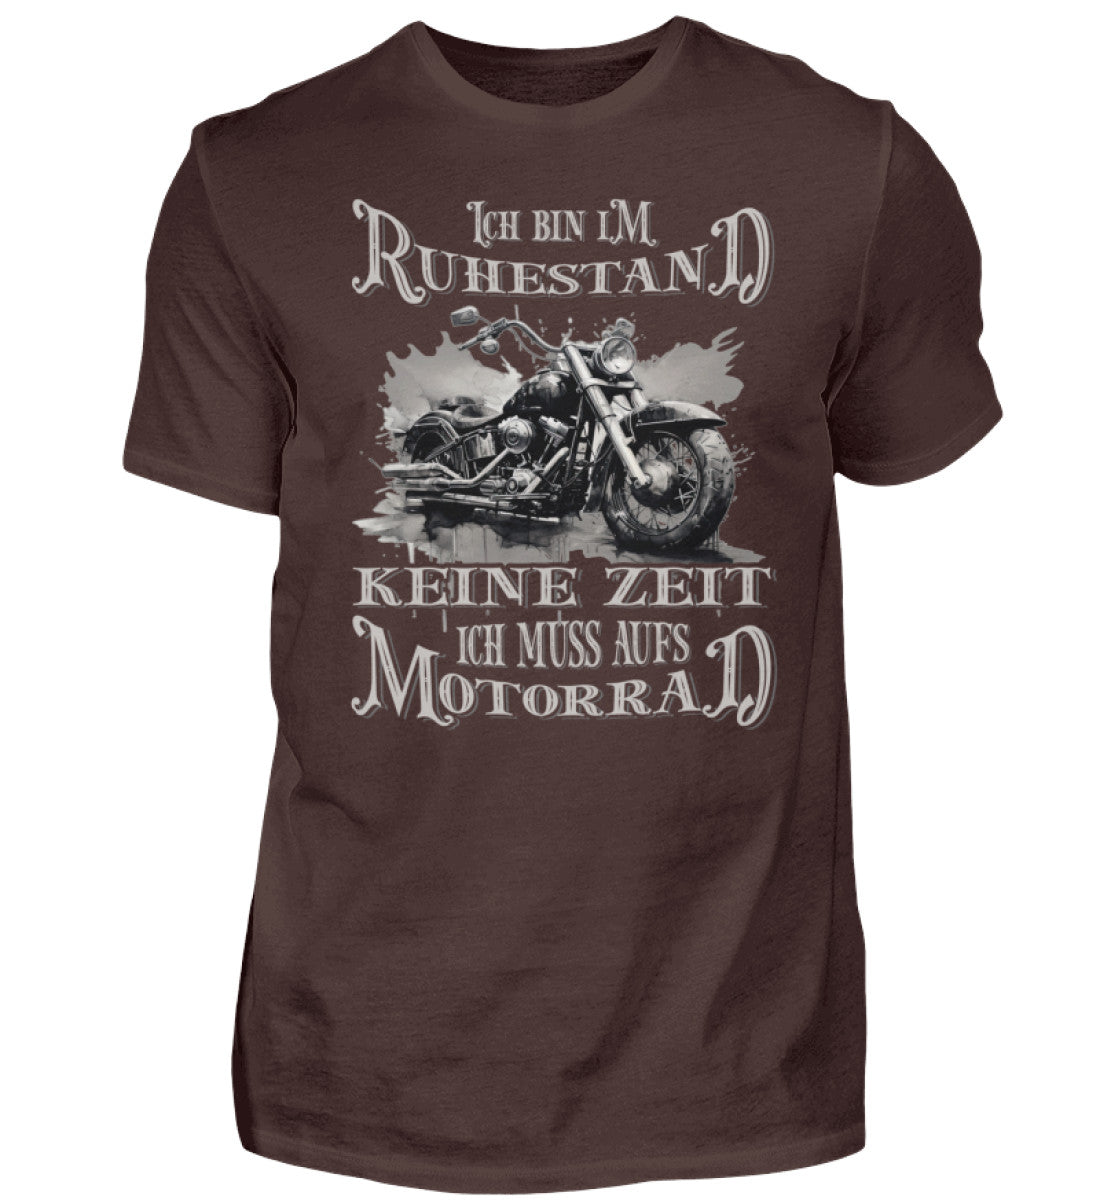 Ein Biker T-Shirt für Motorradfahrer von Wingbikers mit dem Aufdruck, Ich bin im Ruhestand - Keine Zeit - Ich muss aufs Motorrad, in braun.